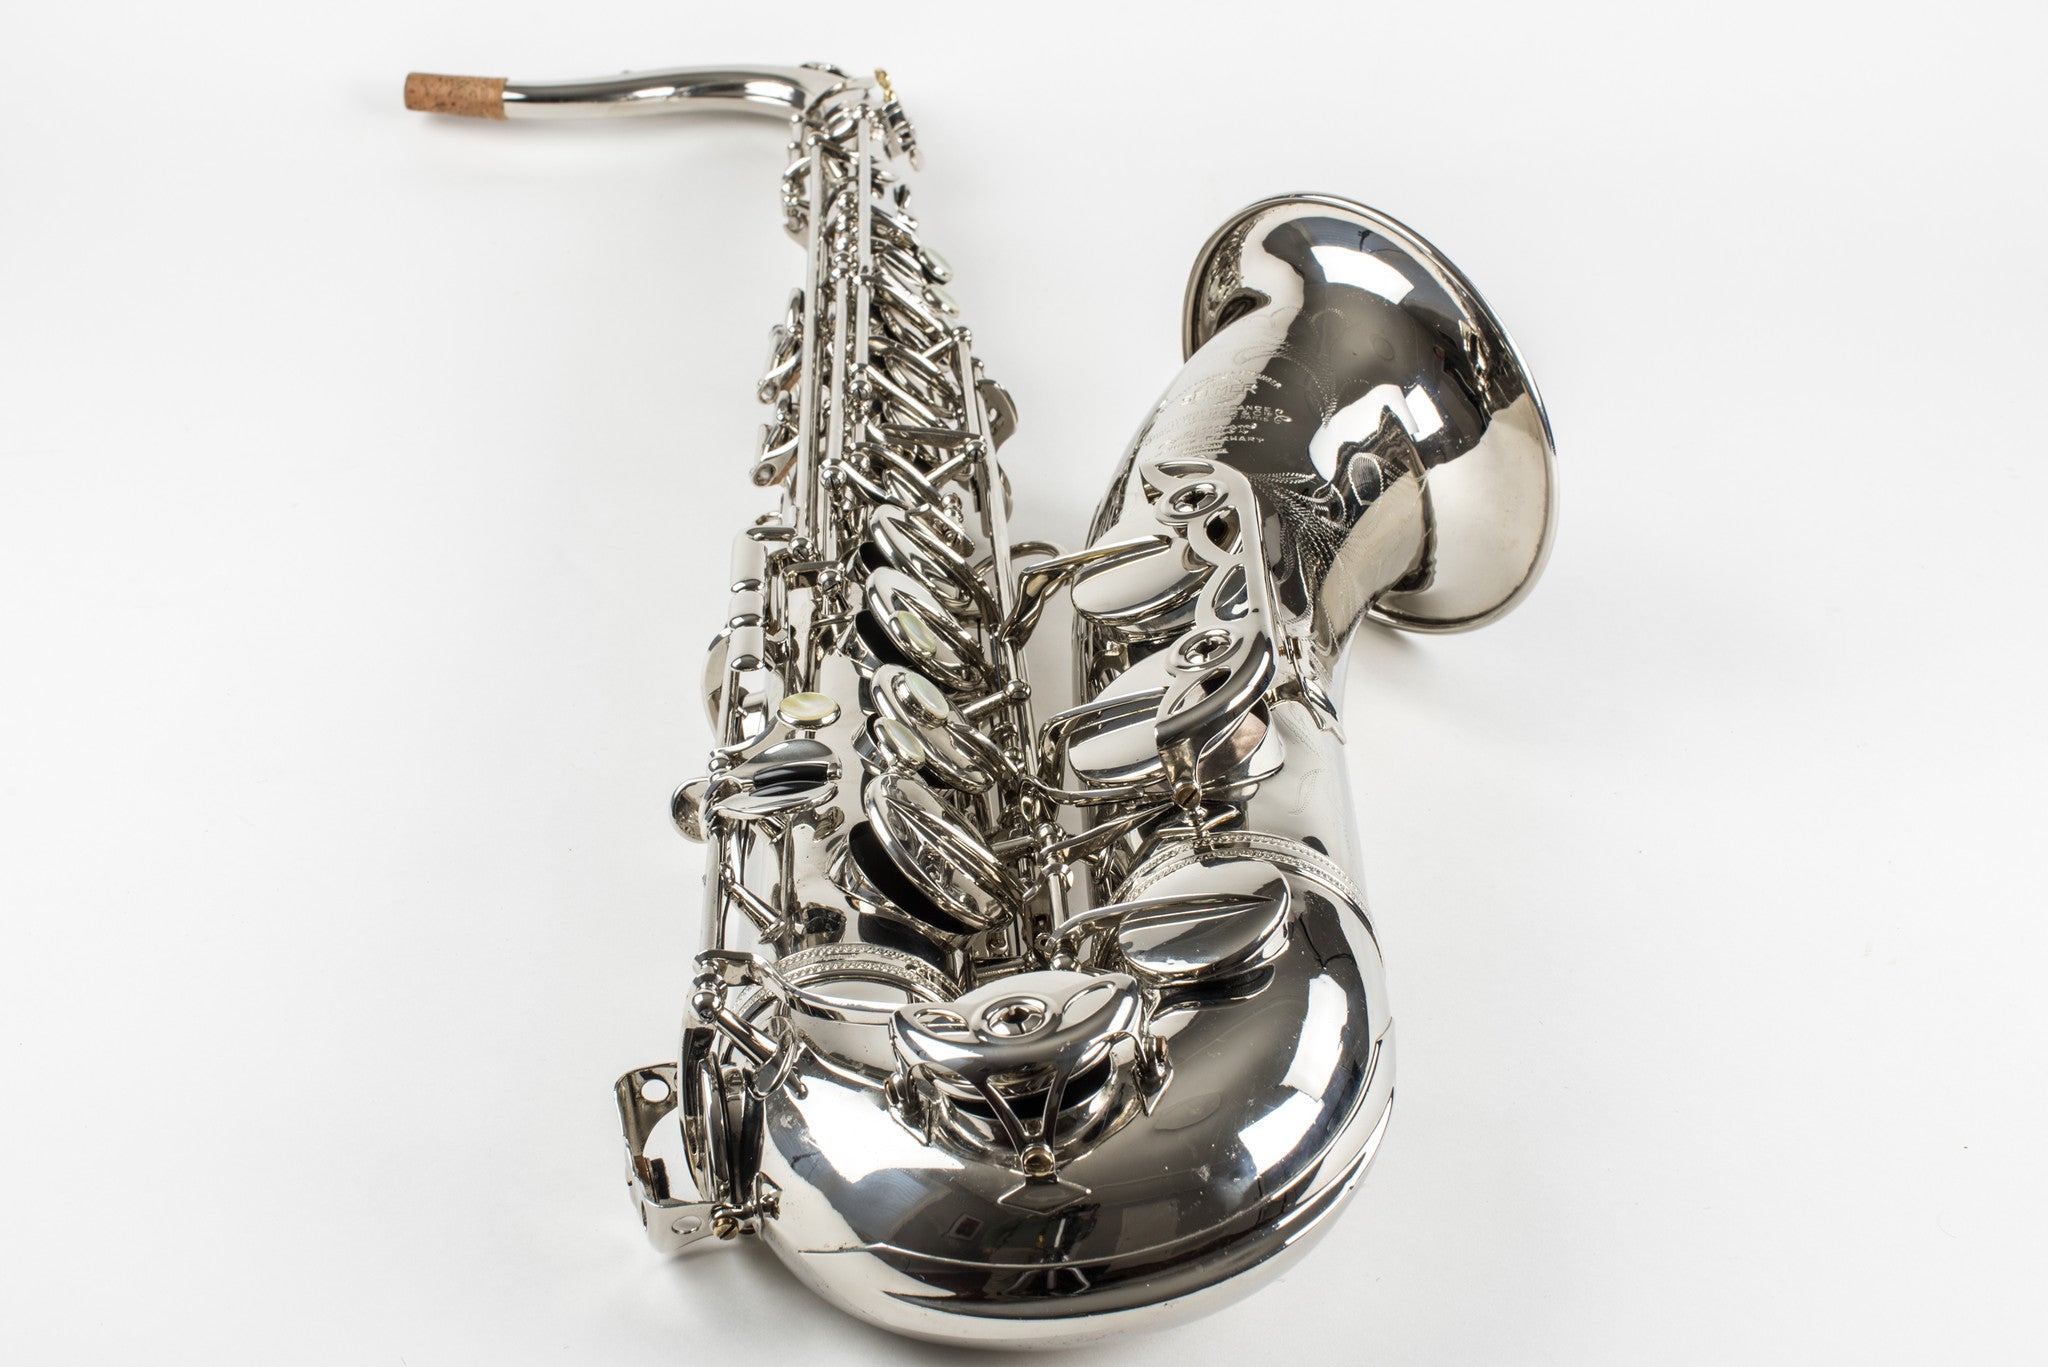 1957 Selmer Mark VI Tenor Saxophone 69,xxx, Fresh Overhaul